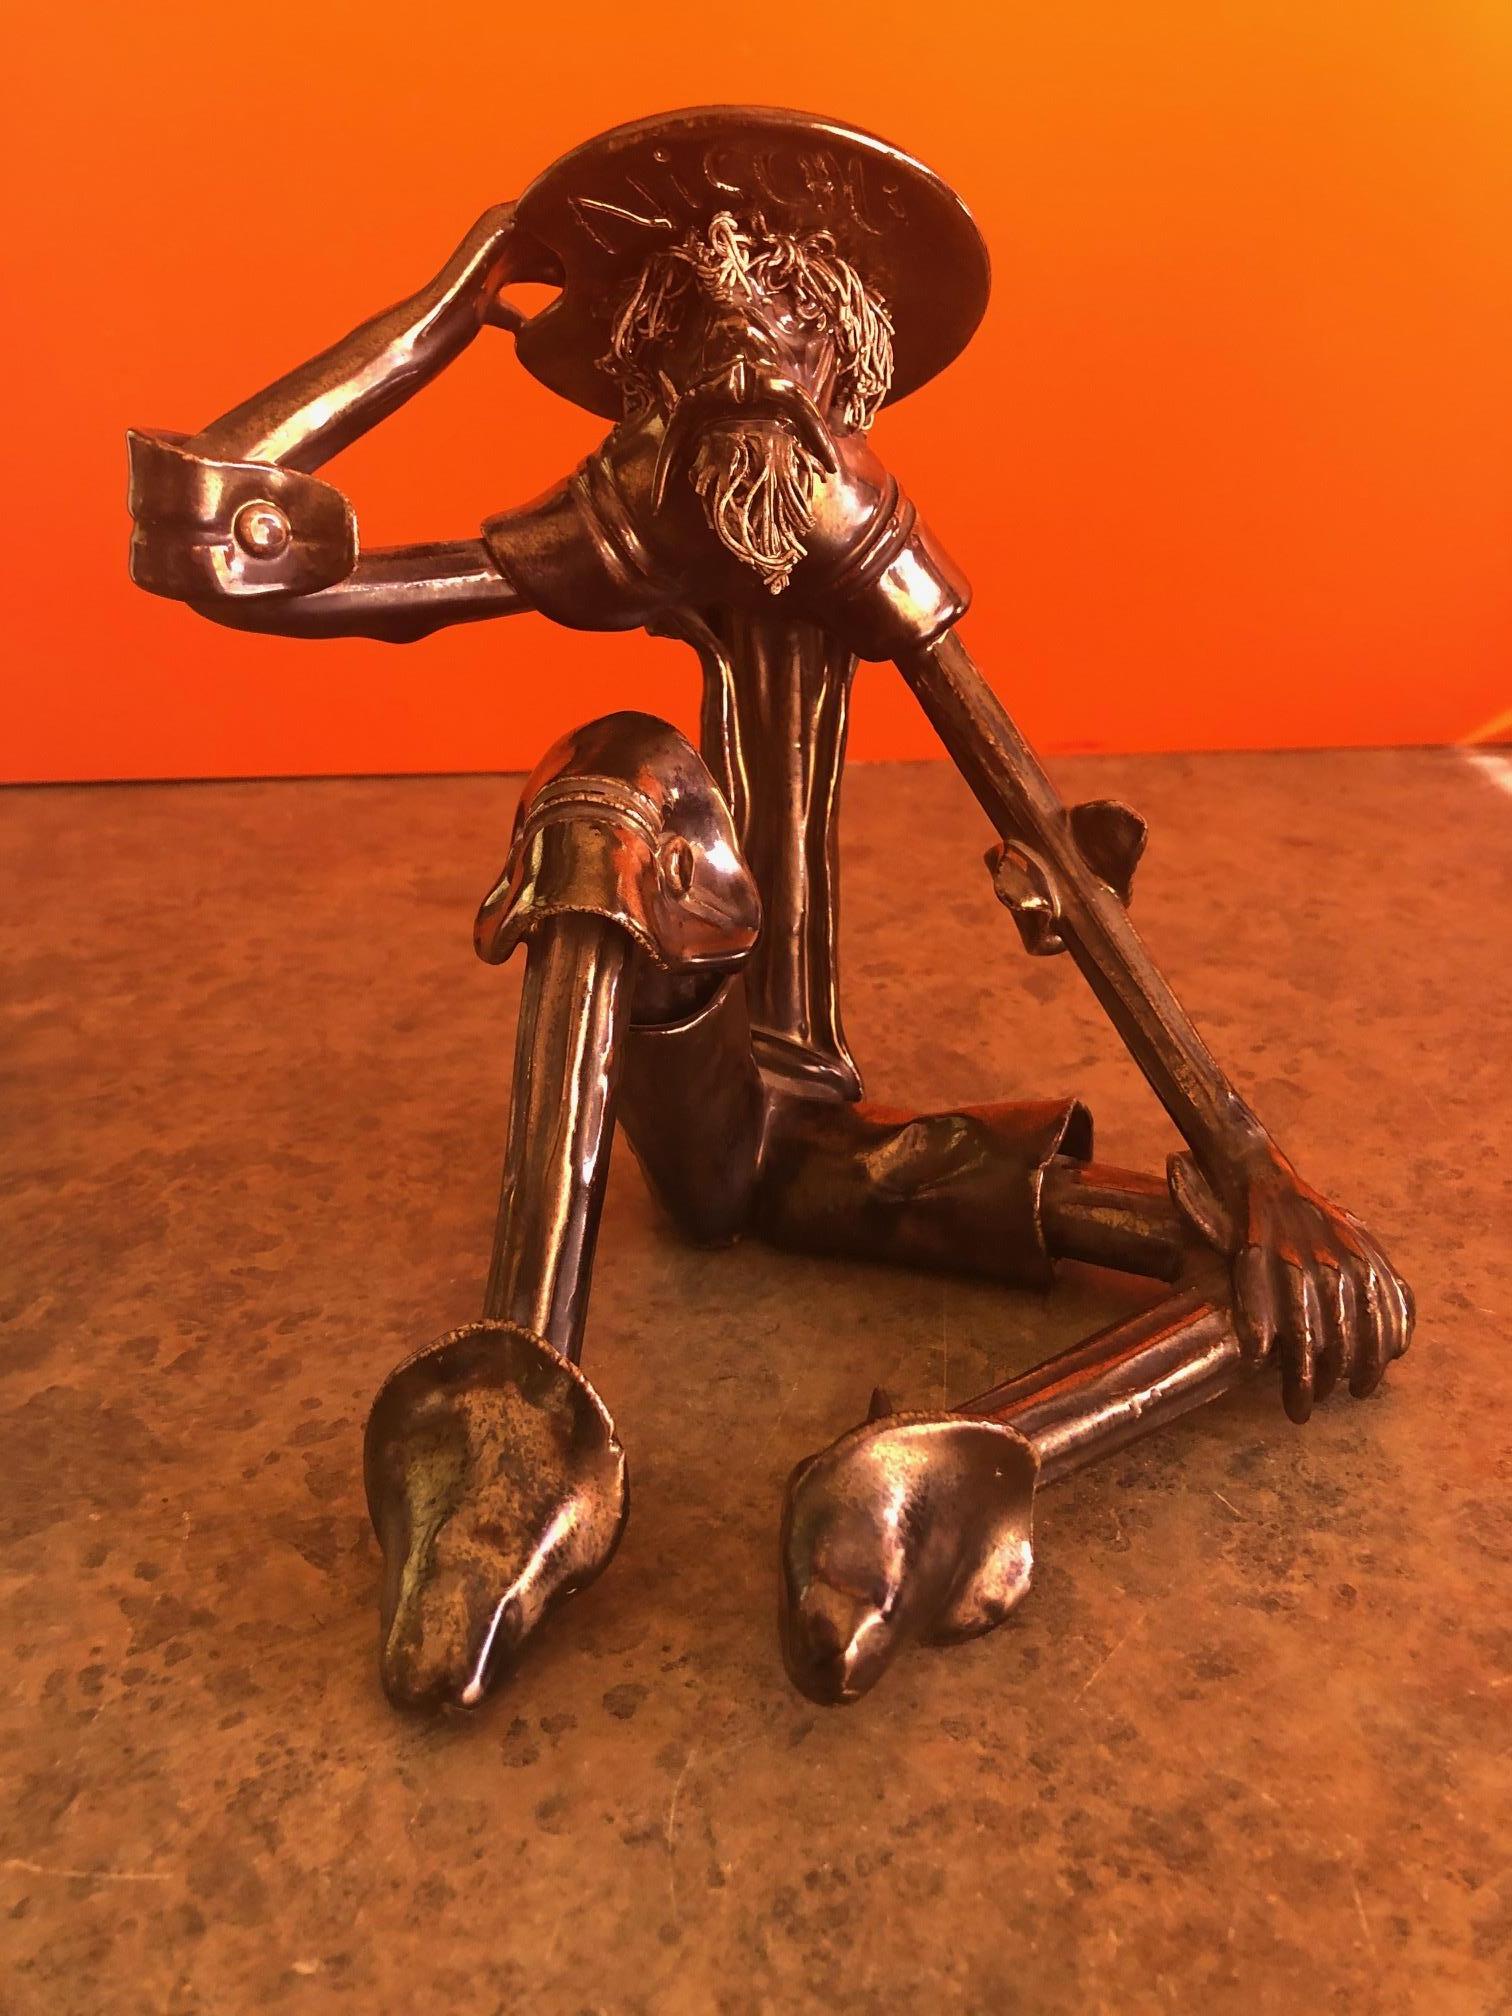 North American Signed Spaghetti Sculpture of Don Quixote by Roberto Nischli